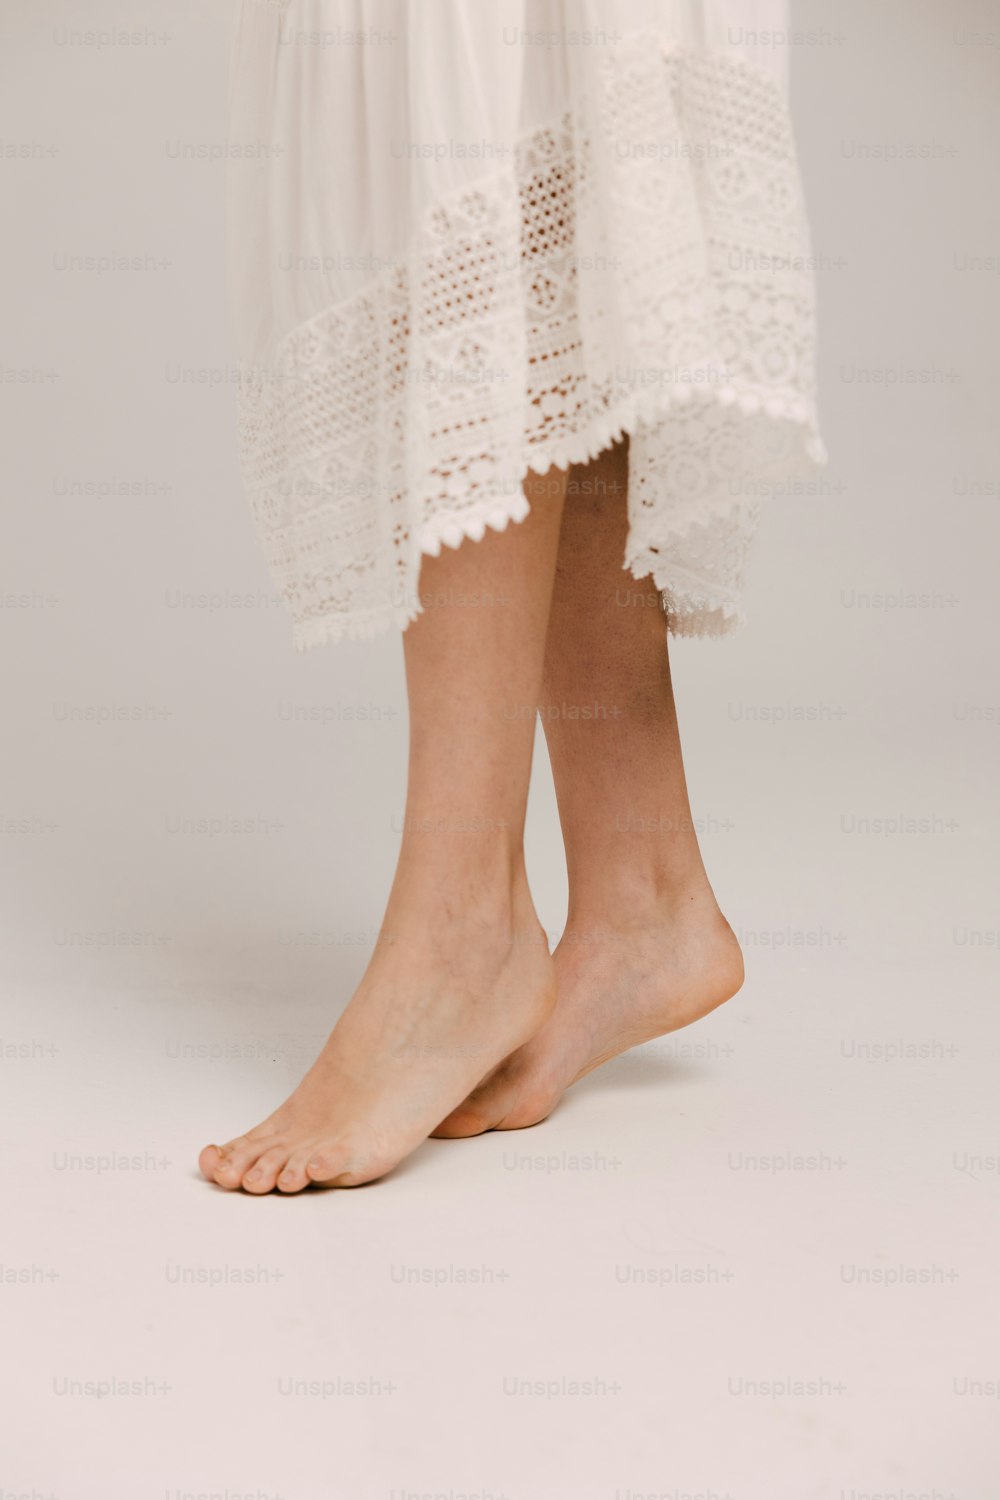 um close up das pernas de uma pessoa usando um vestido branco